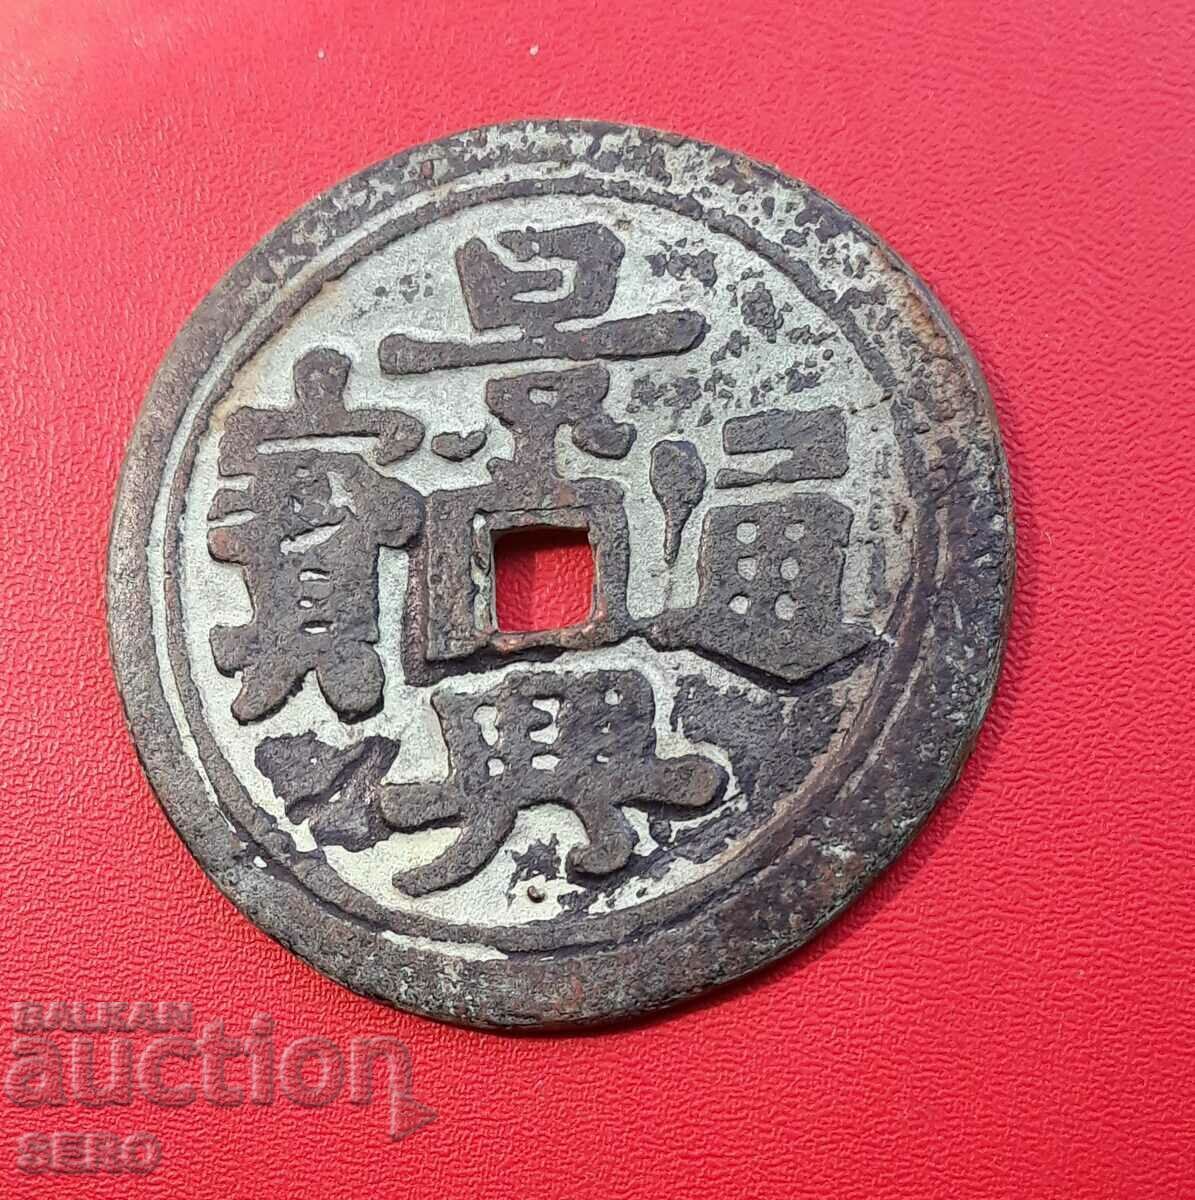 China - Monedă mare de cupru chinezească - probabil o replică